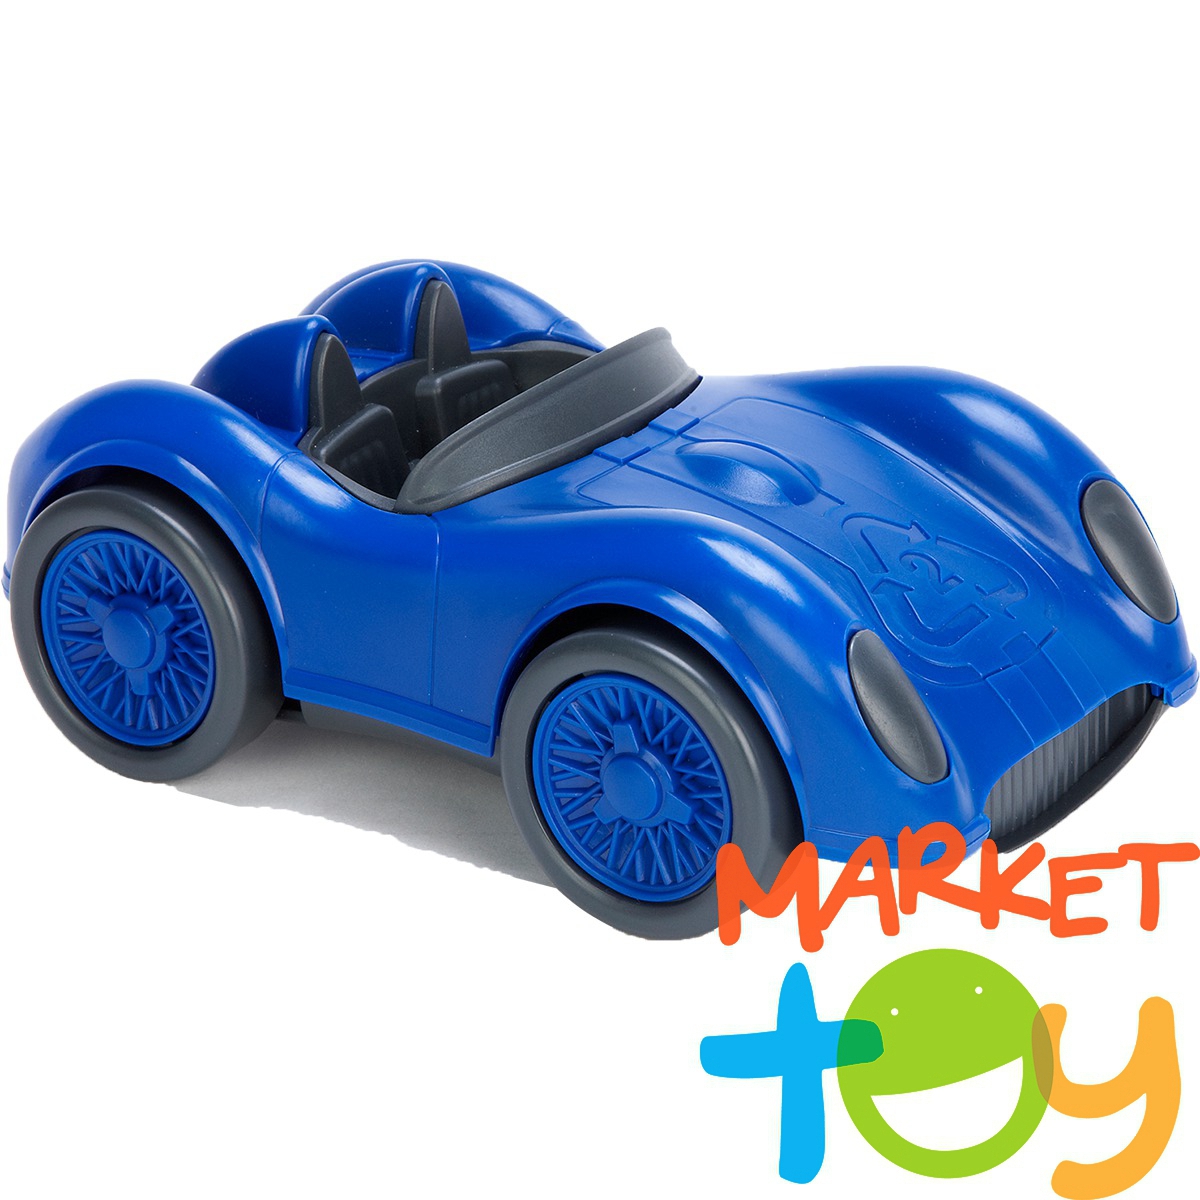 Синяя машинка для детей. Игрушечные машины. Машинка синяя. Синяя машинка игрушка. Синяя машина для детей.